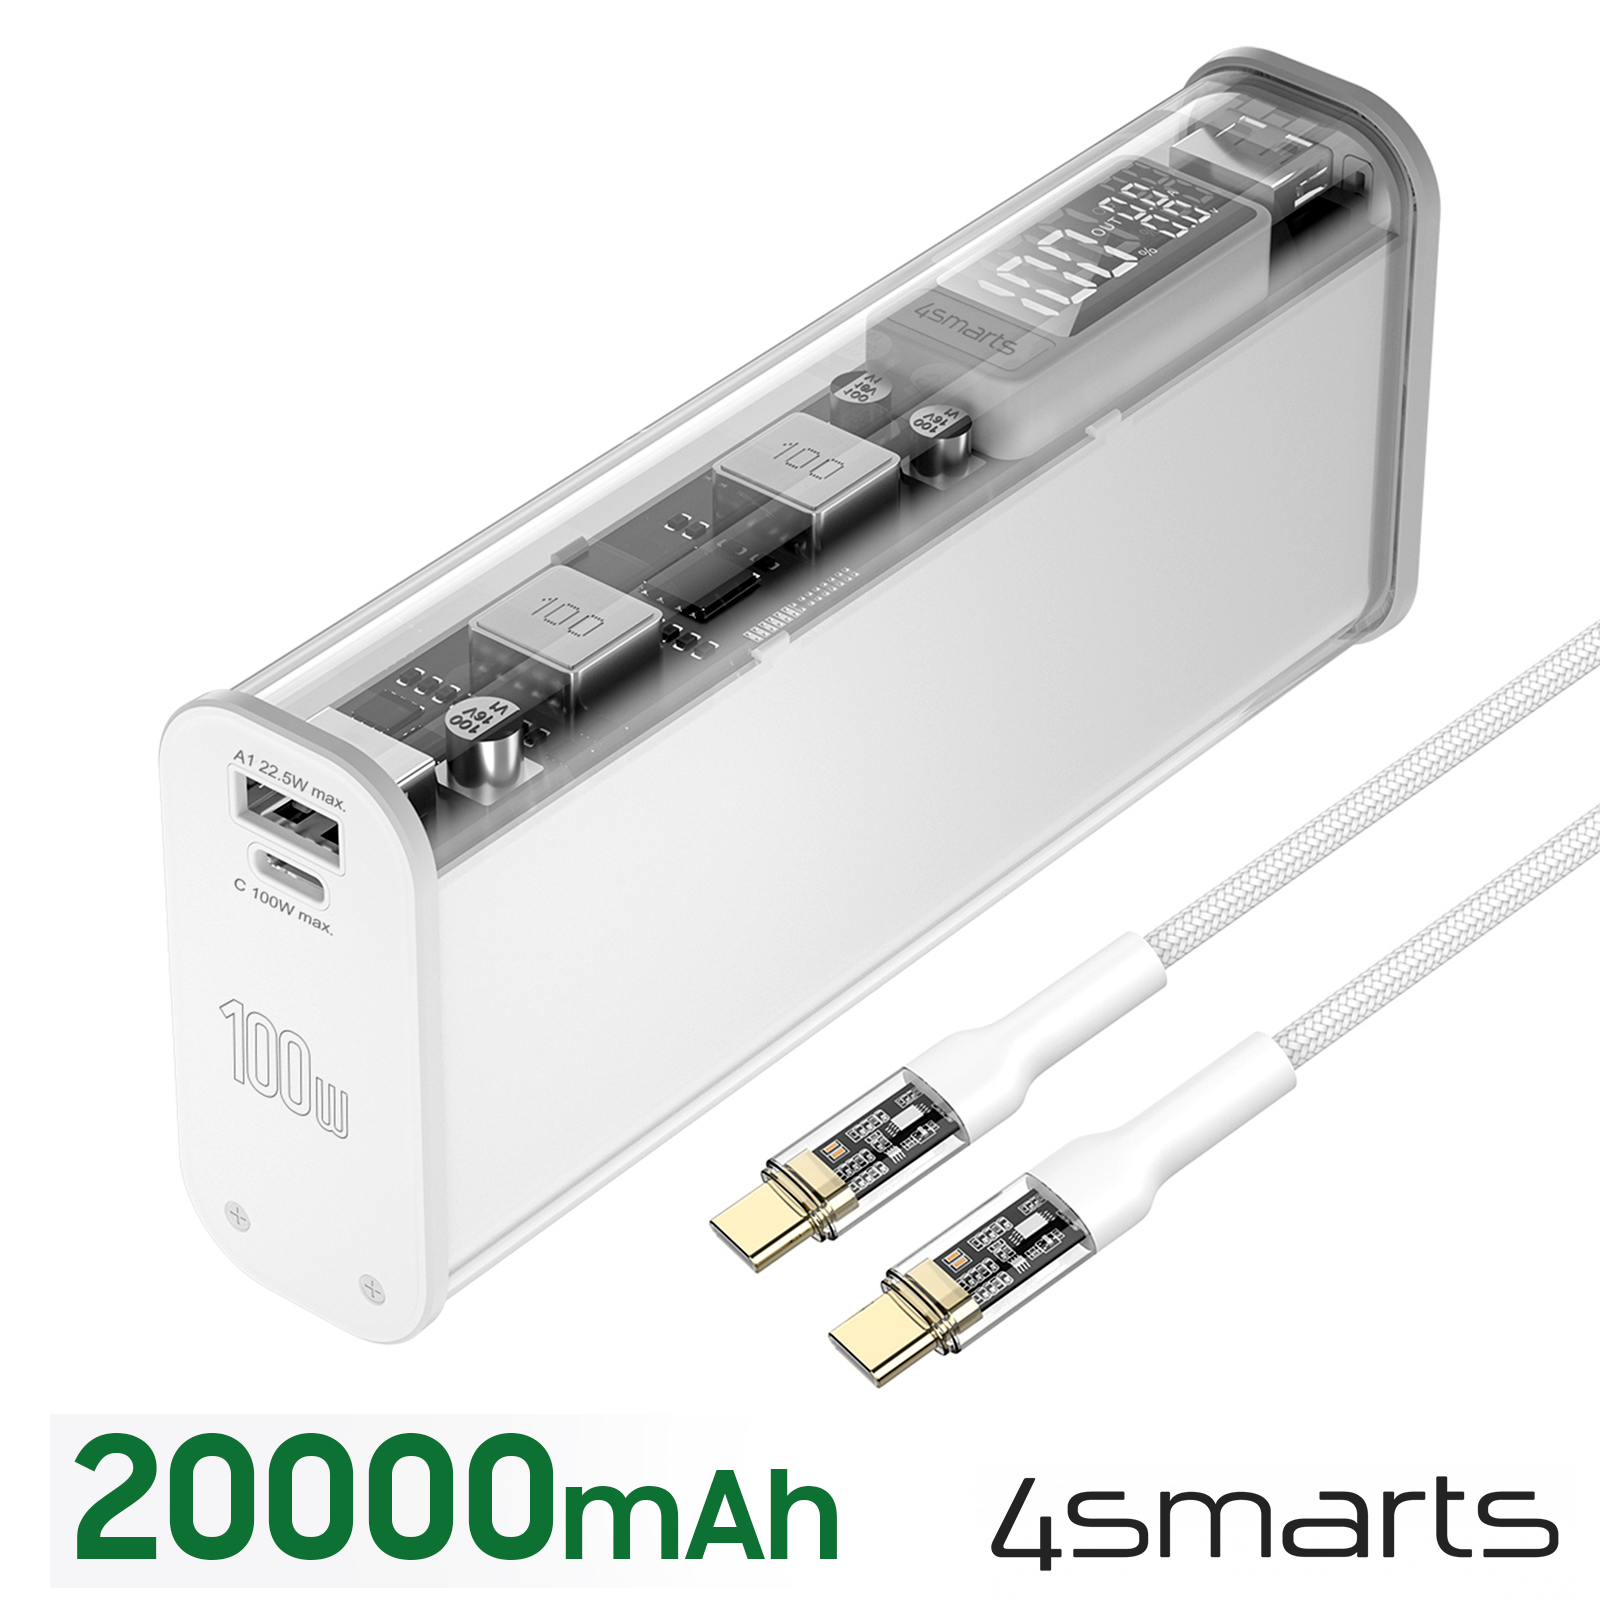 Batterie de secours 20000mAh 100W USB C + USB 3.0, 4Smarts Lucid Block -  Blanc Translucide - Français